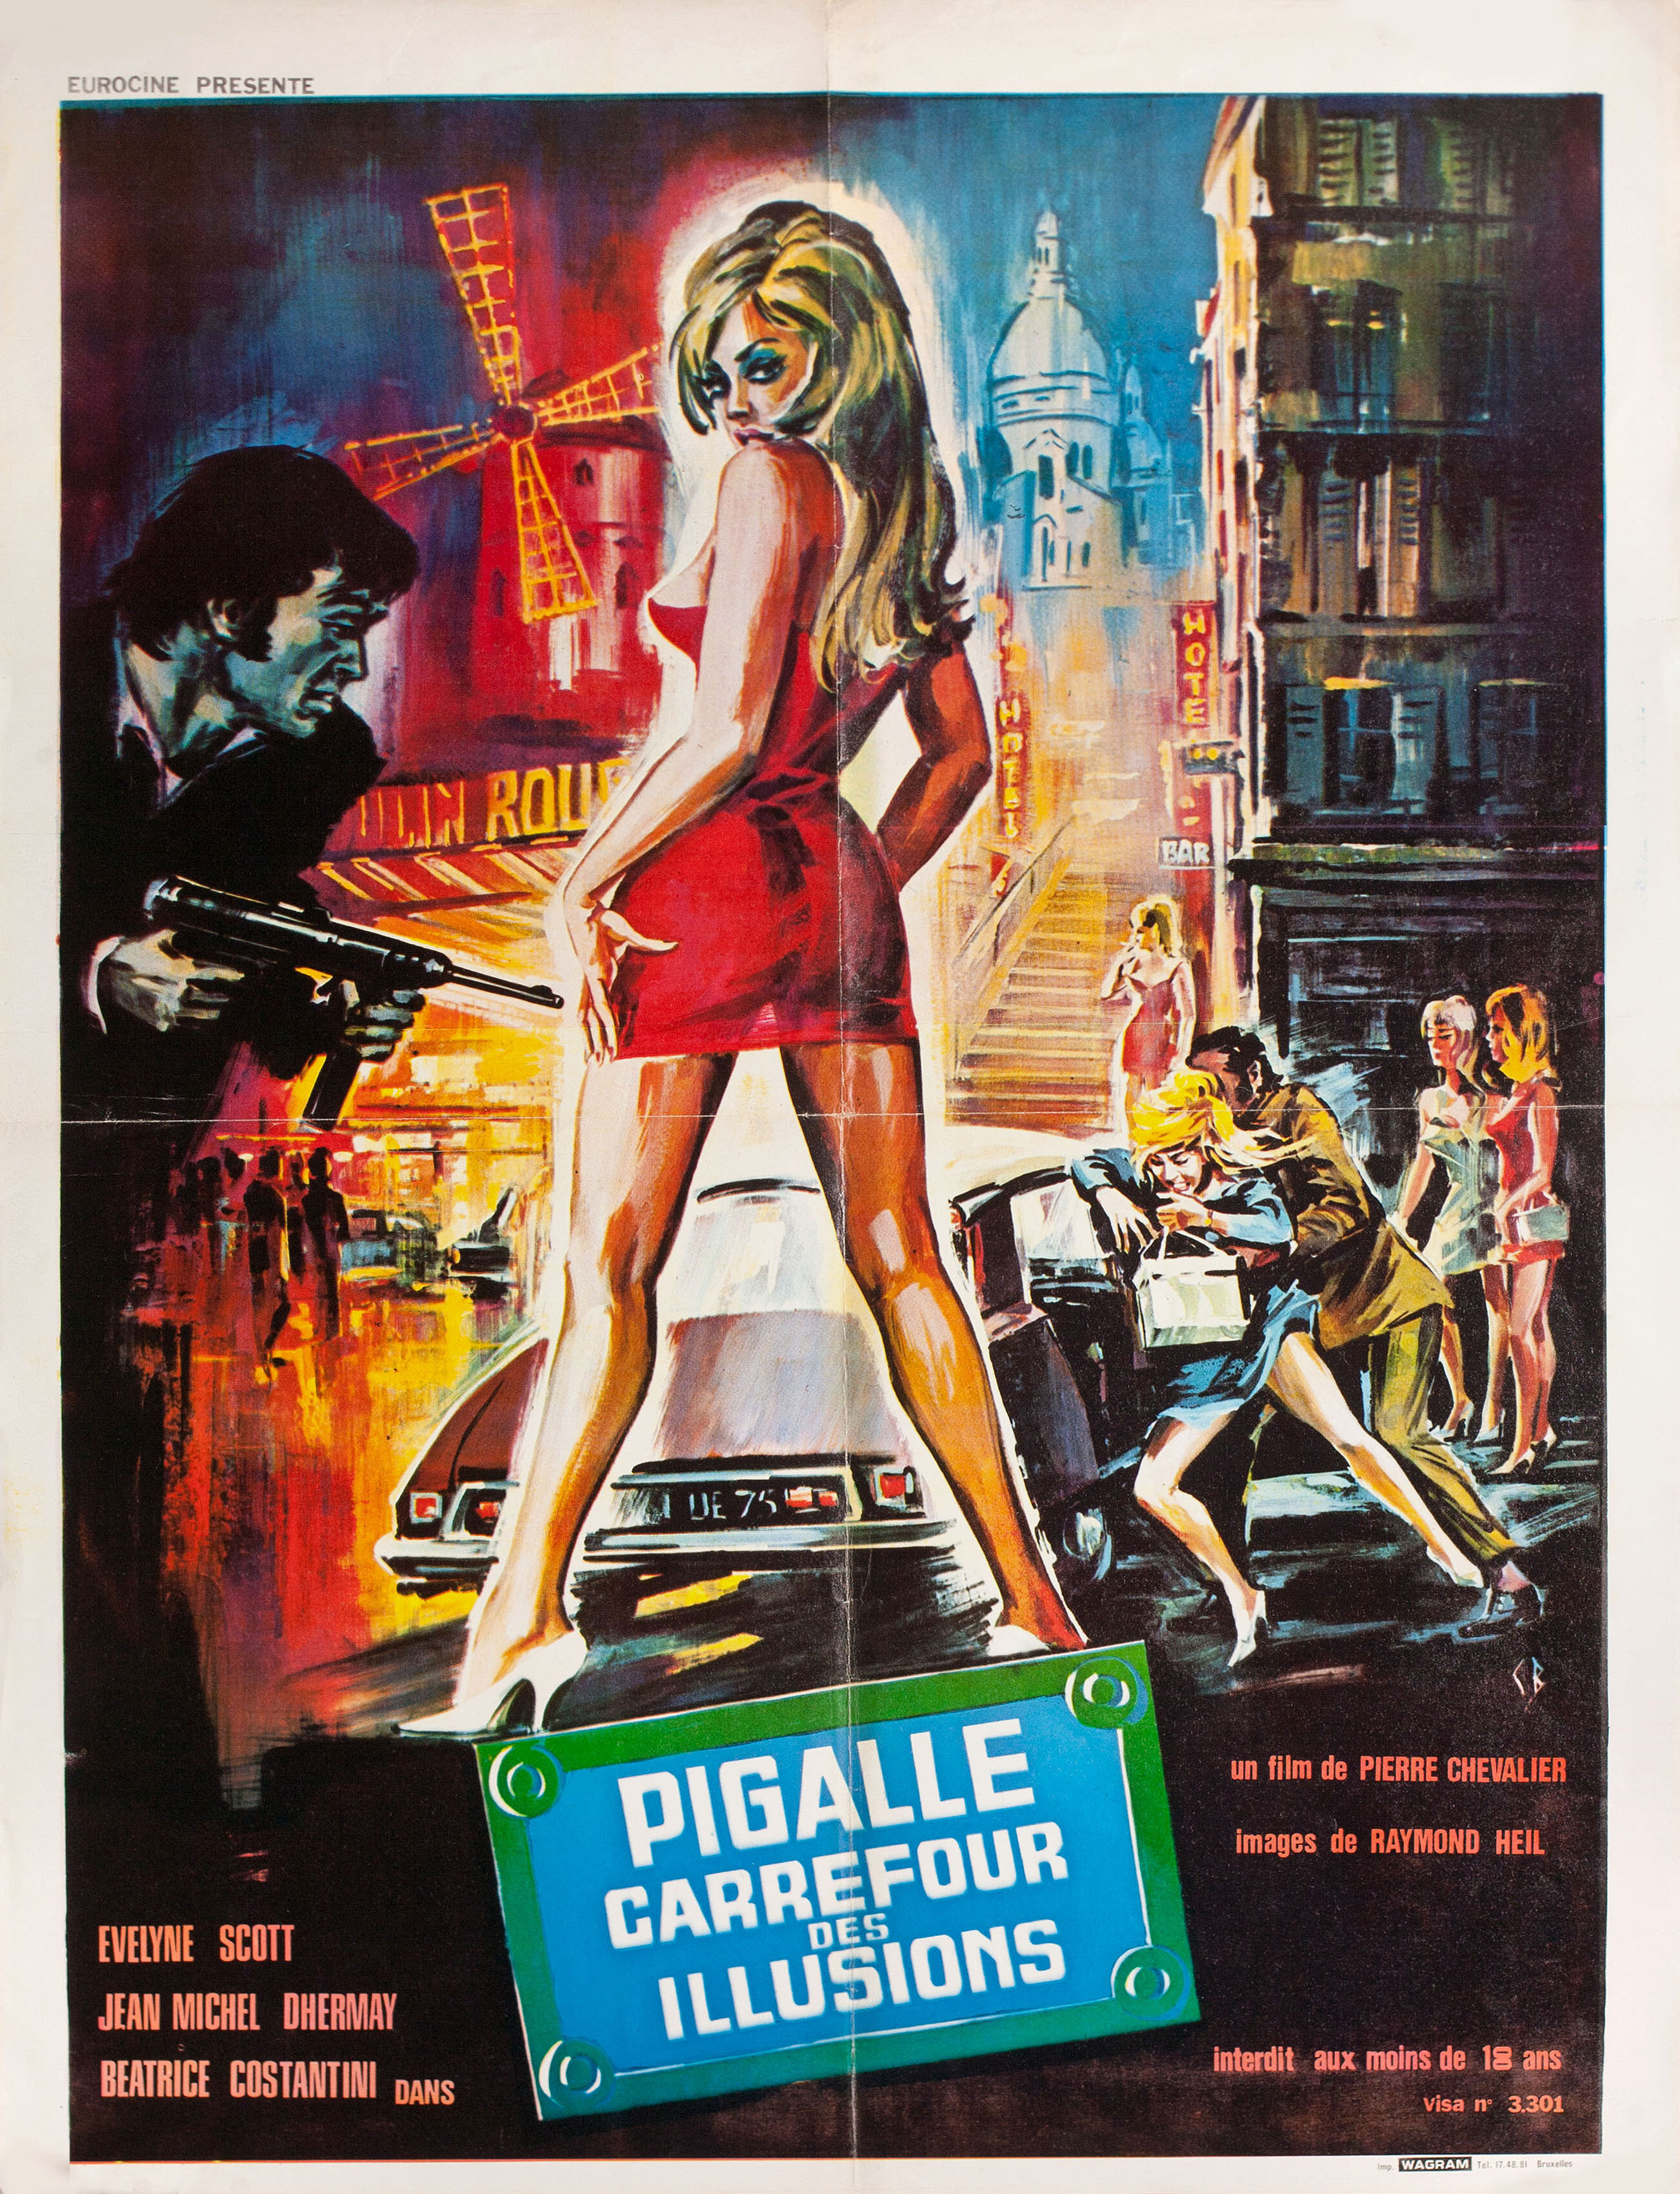 Пигаль, перекресток иллюзий (Pigalle carrefour des illusions, 1973), режиссёр Пьер Шевалье, художественный постер к фильму (Бельгия, 1973 год)